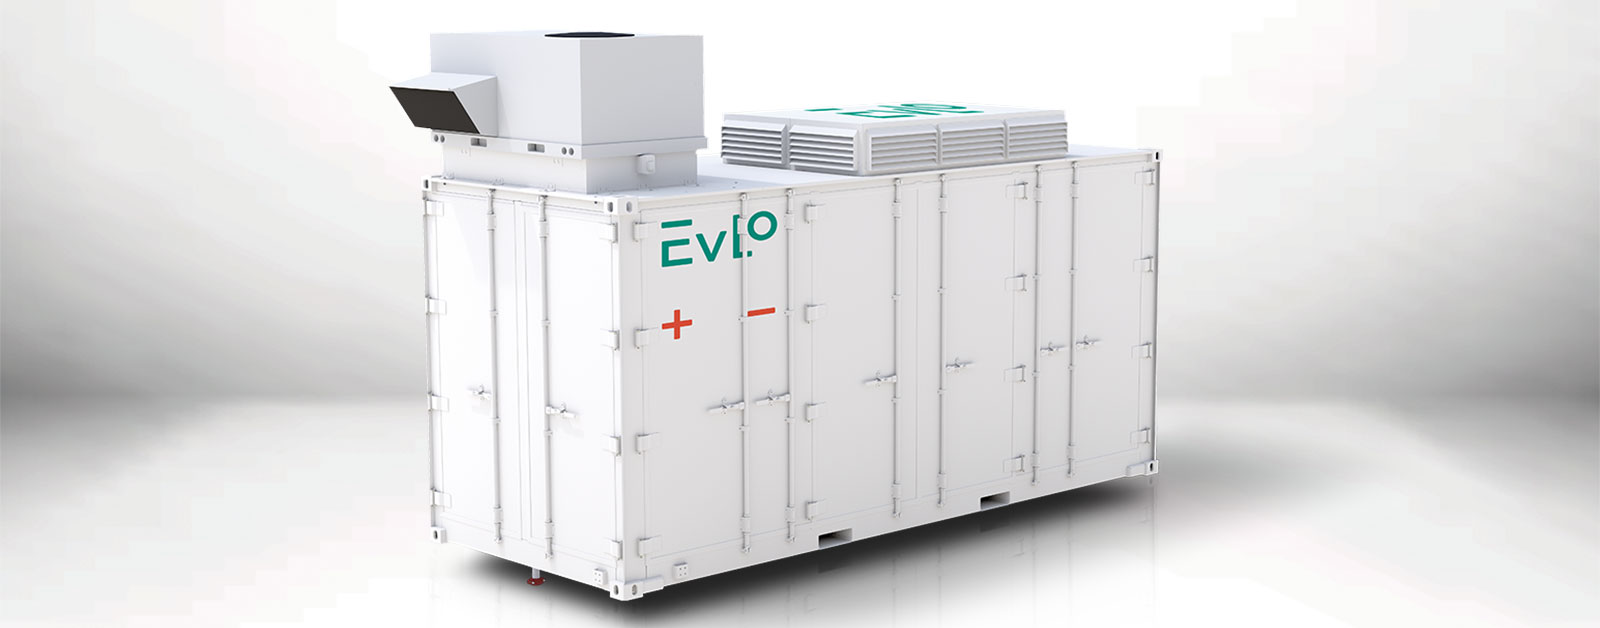 EVLOFLEX Energy storage